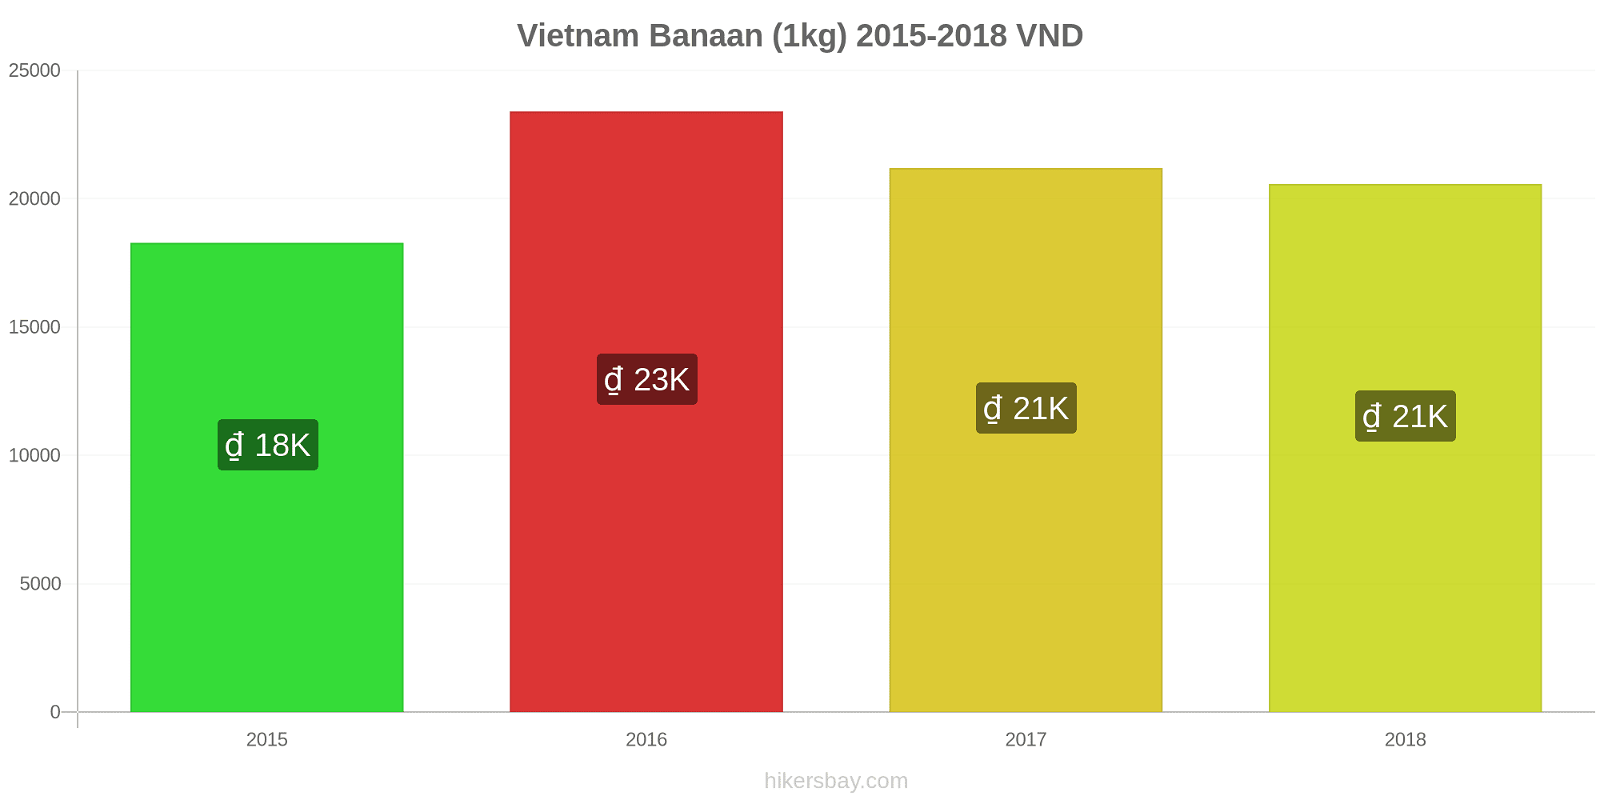 Vietnam prijswijzigingen Bananen (1kg) hikersbay.com